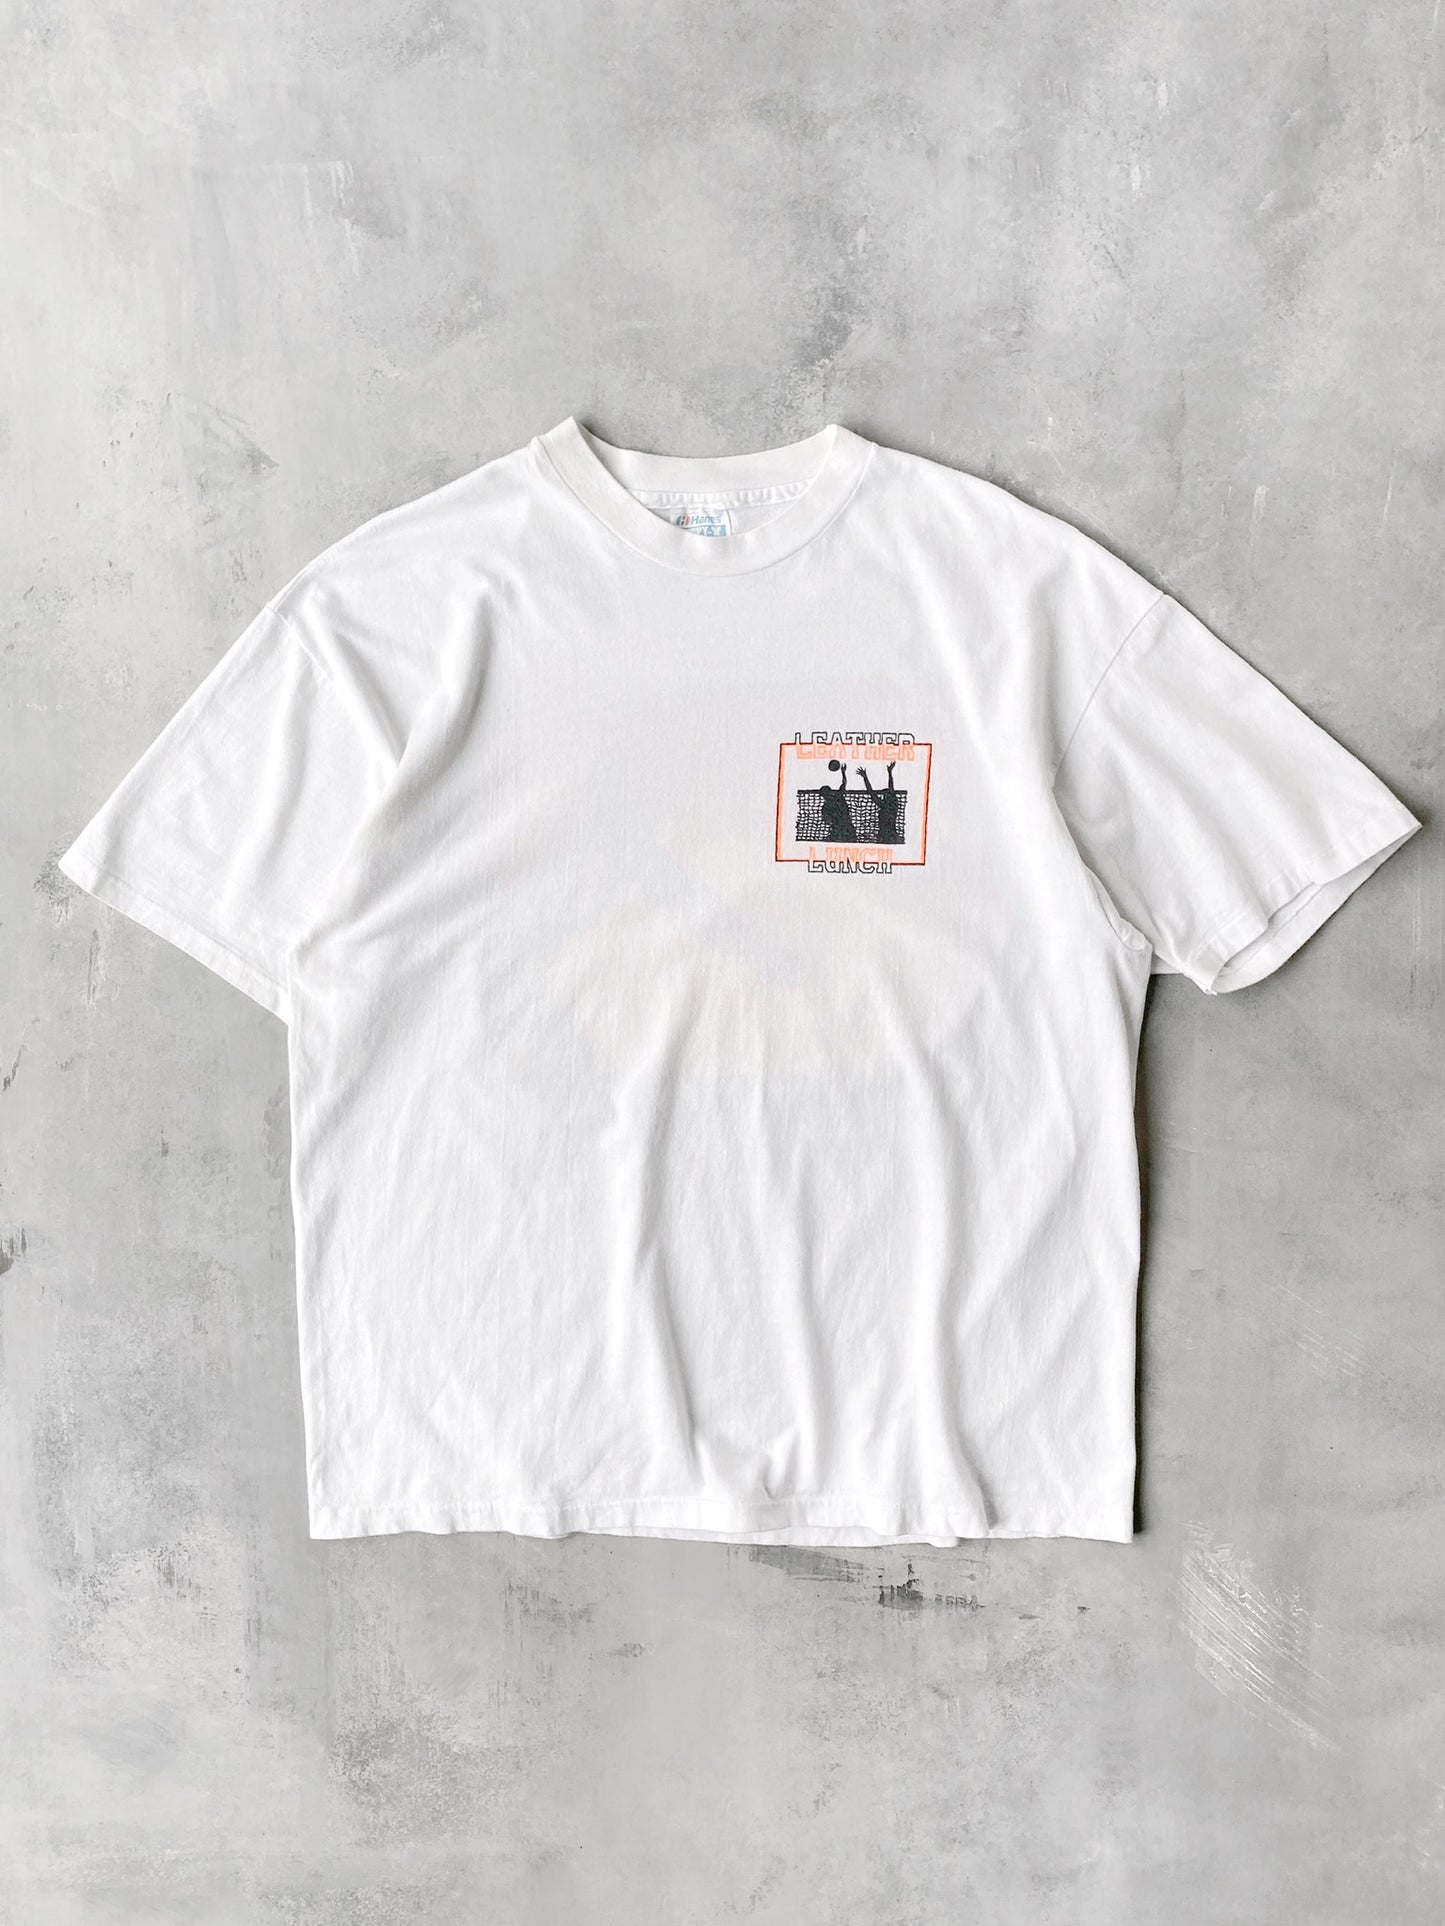 Beach Volleyball T-Shirt 80's - XL